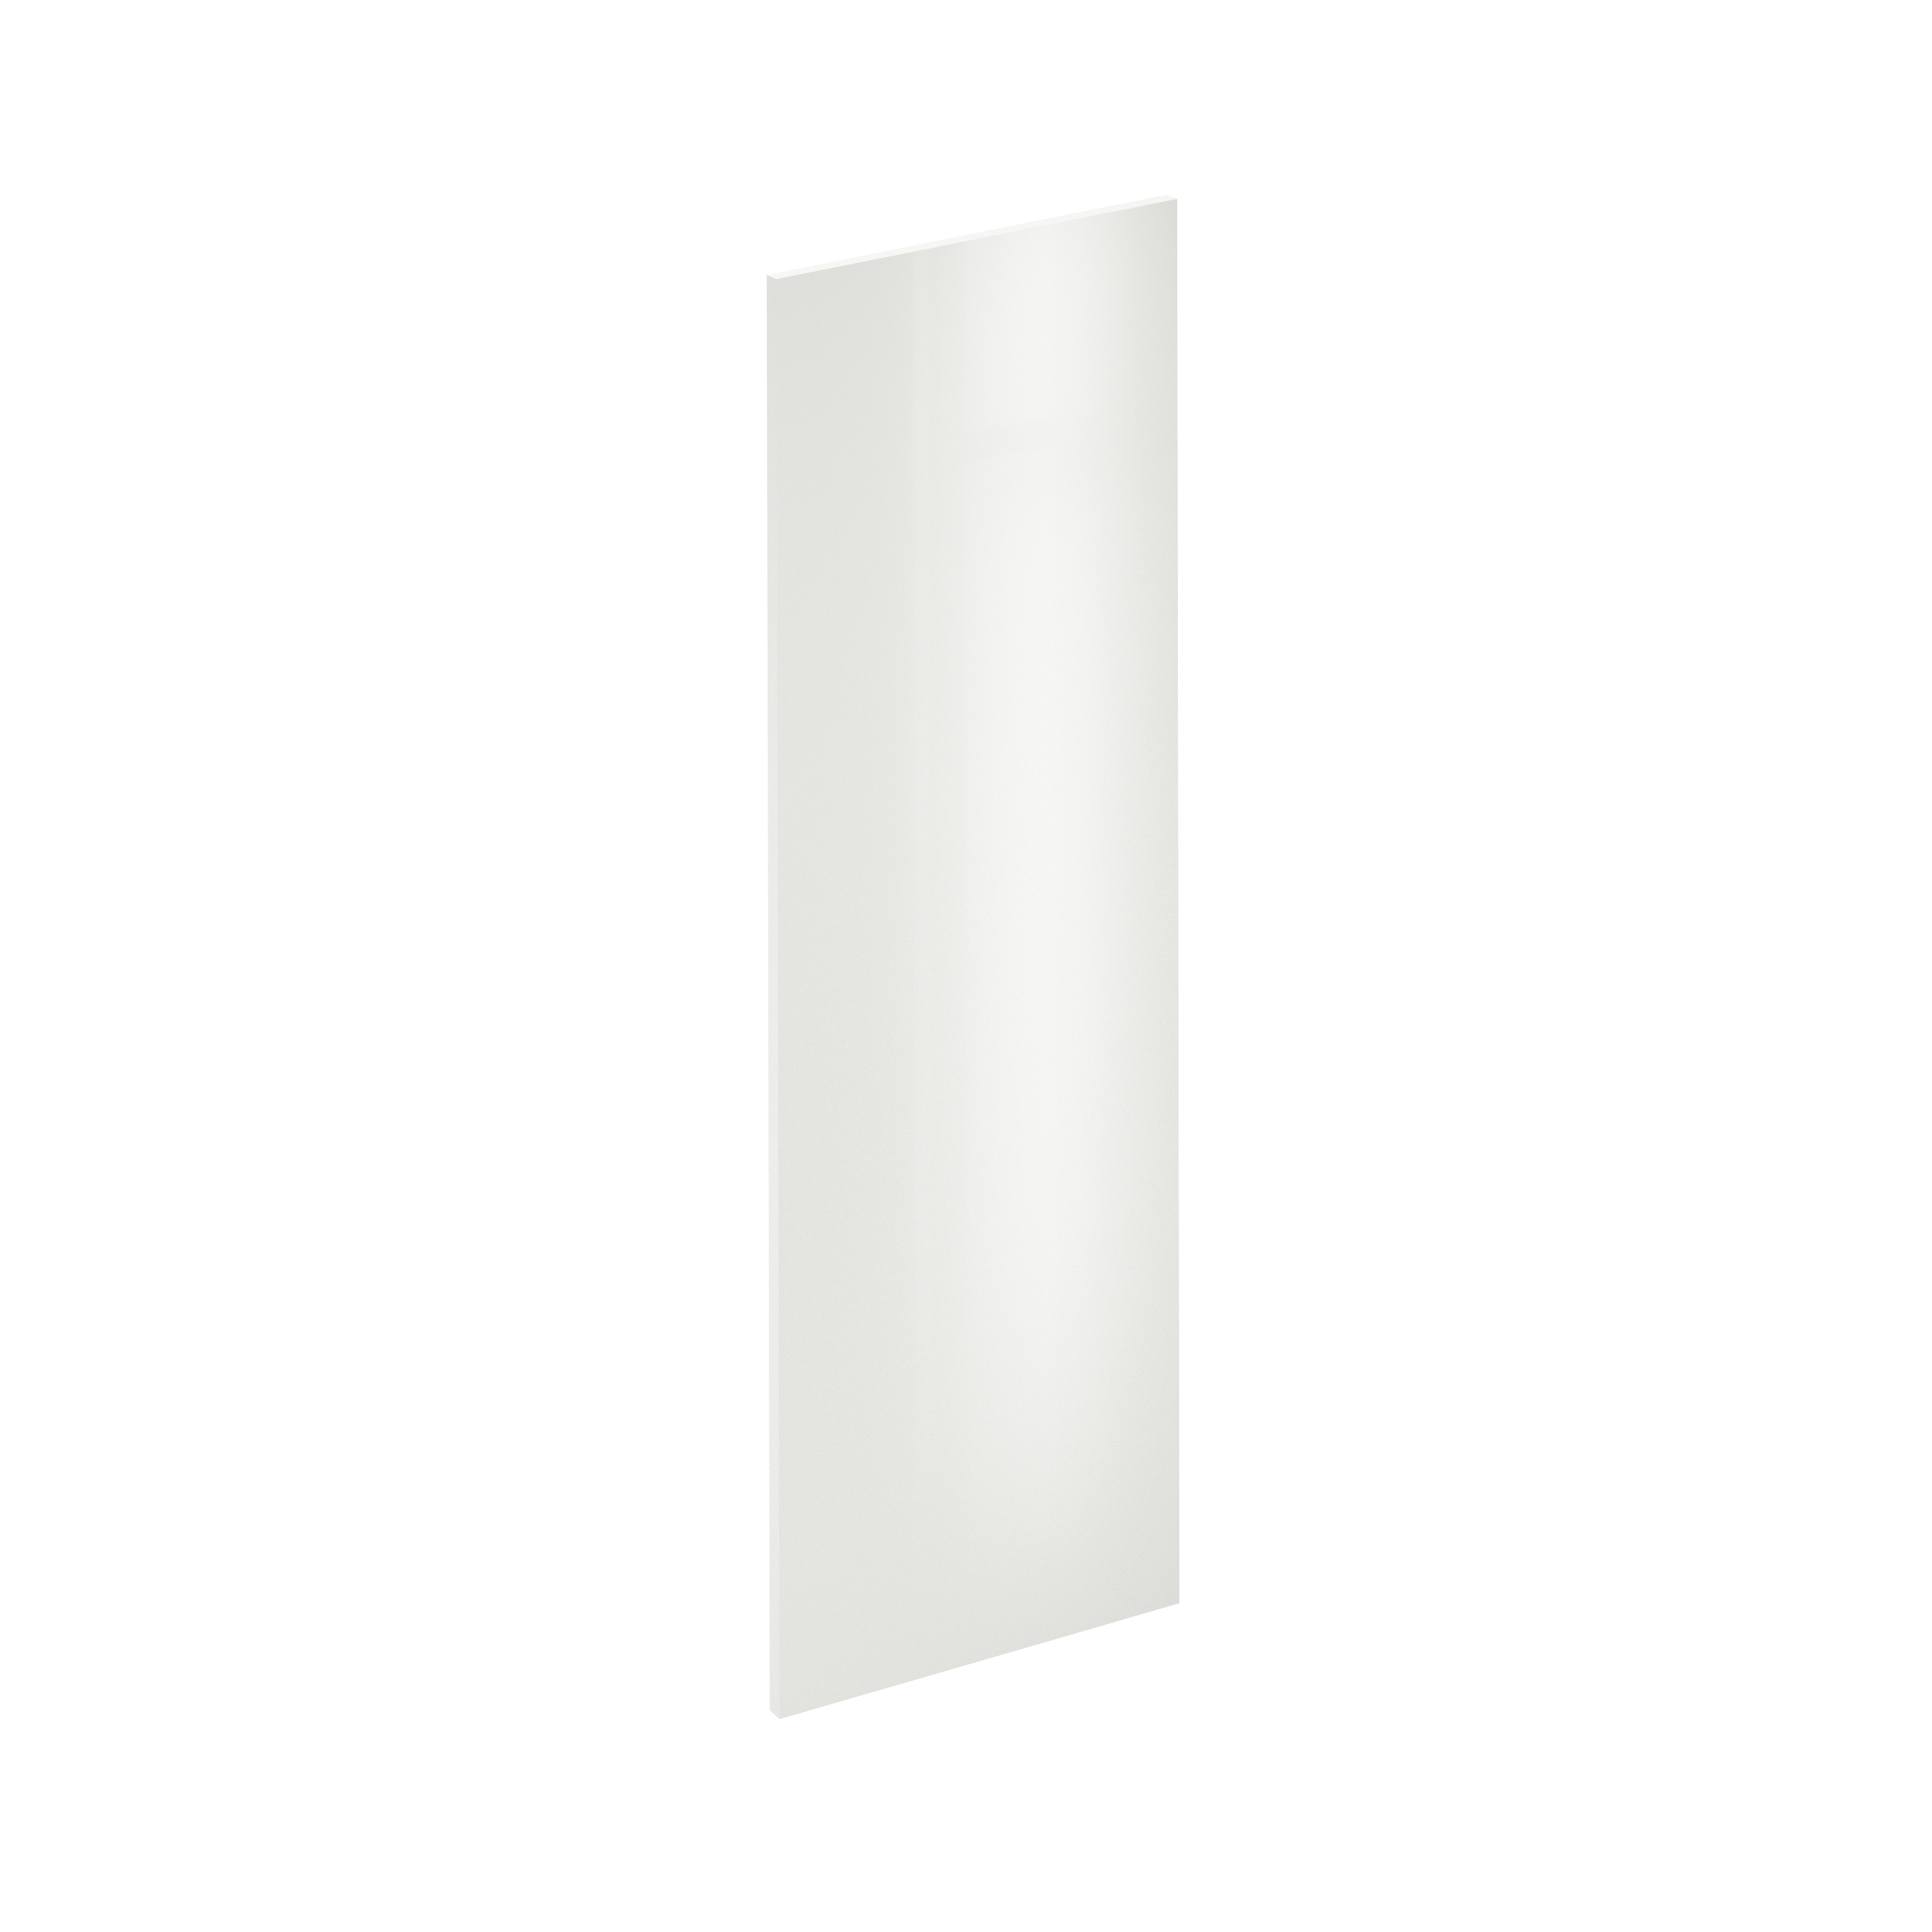 Puerta para mueble de cocina sevilla blanco brillo h 137.6 x l 45 cm